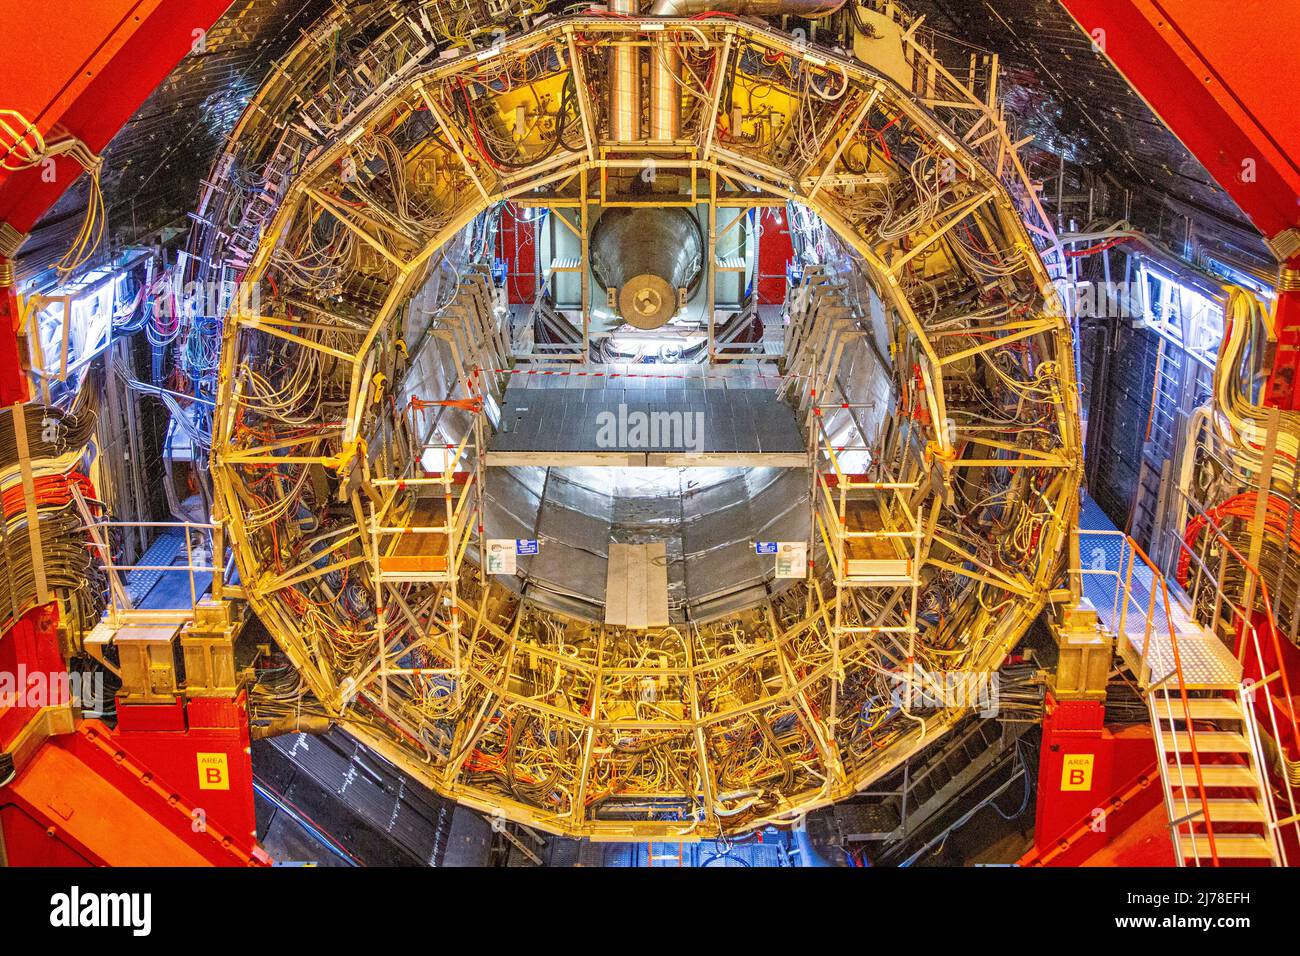 Se están realizando tareas de mantenimiento y actualizaciones en el detector ALICE del LHC. ALICE es una abreviatura de ' Un experimento de Collider Iónico Grande'. Los científicos e ingenieros del CERN se están preparando para el próximo gran capítulo de la historia del laboratorio de investigación más grande del mundo. Están en marcha planes para construir otro colisionador de partículas que es cuatro veces mayor que el existente LHC - Colisionador de Hadrones Grande. Foto de stock